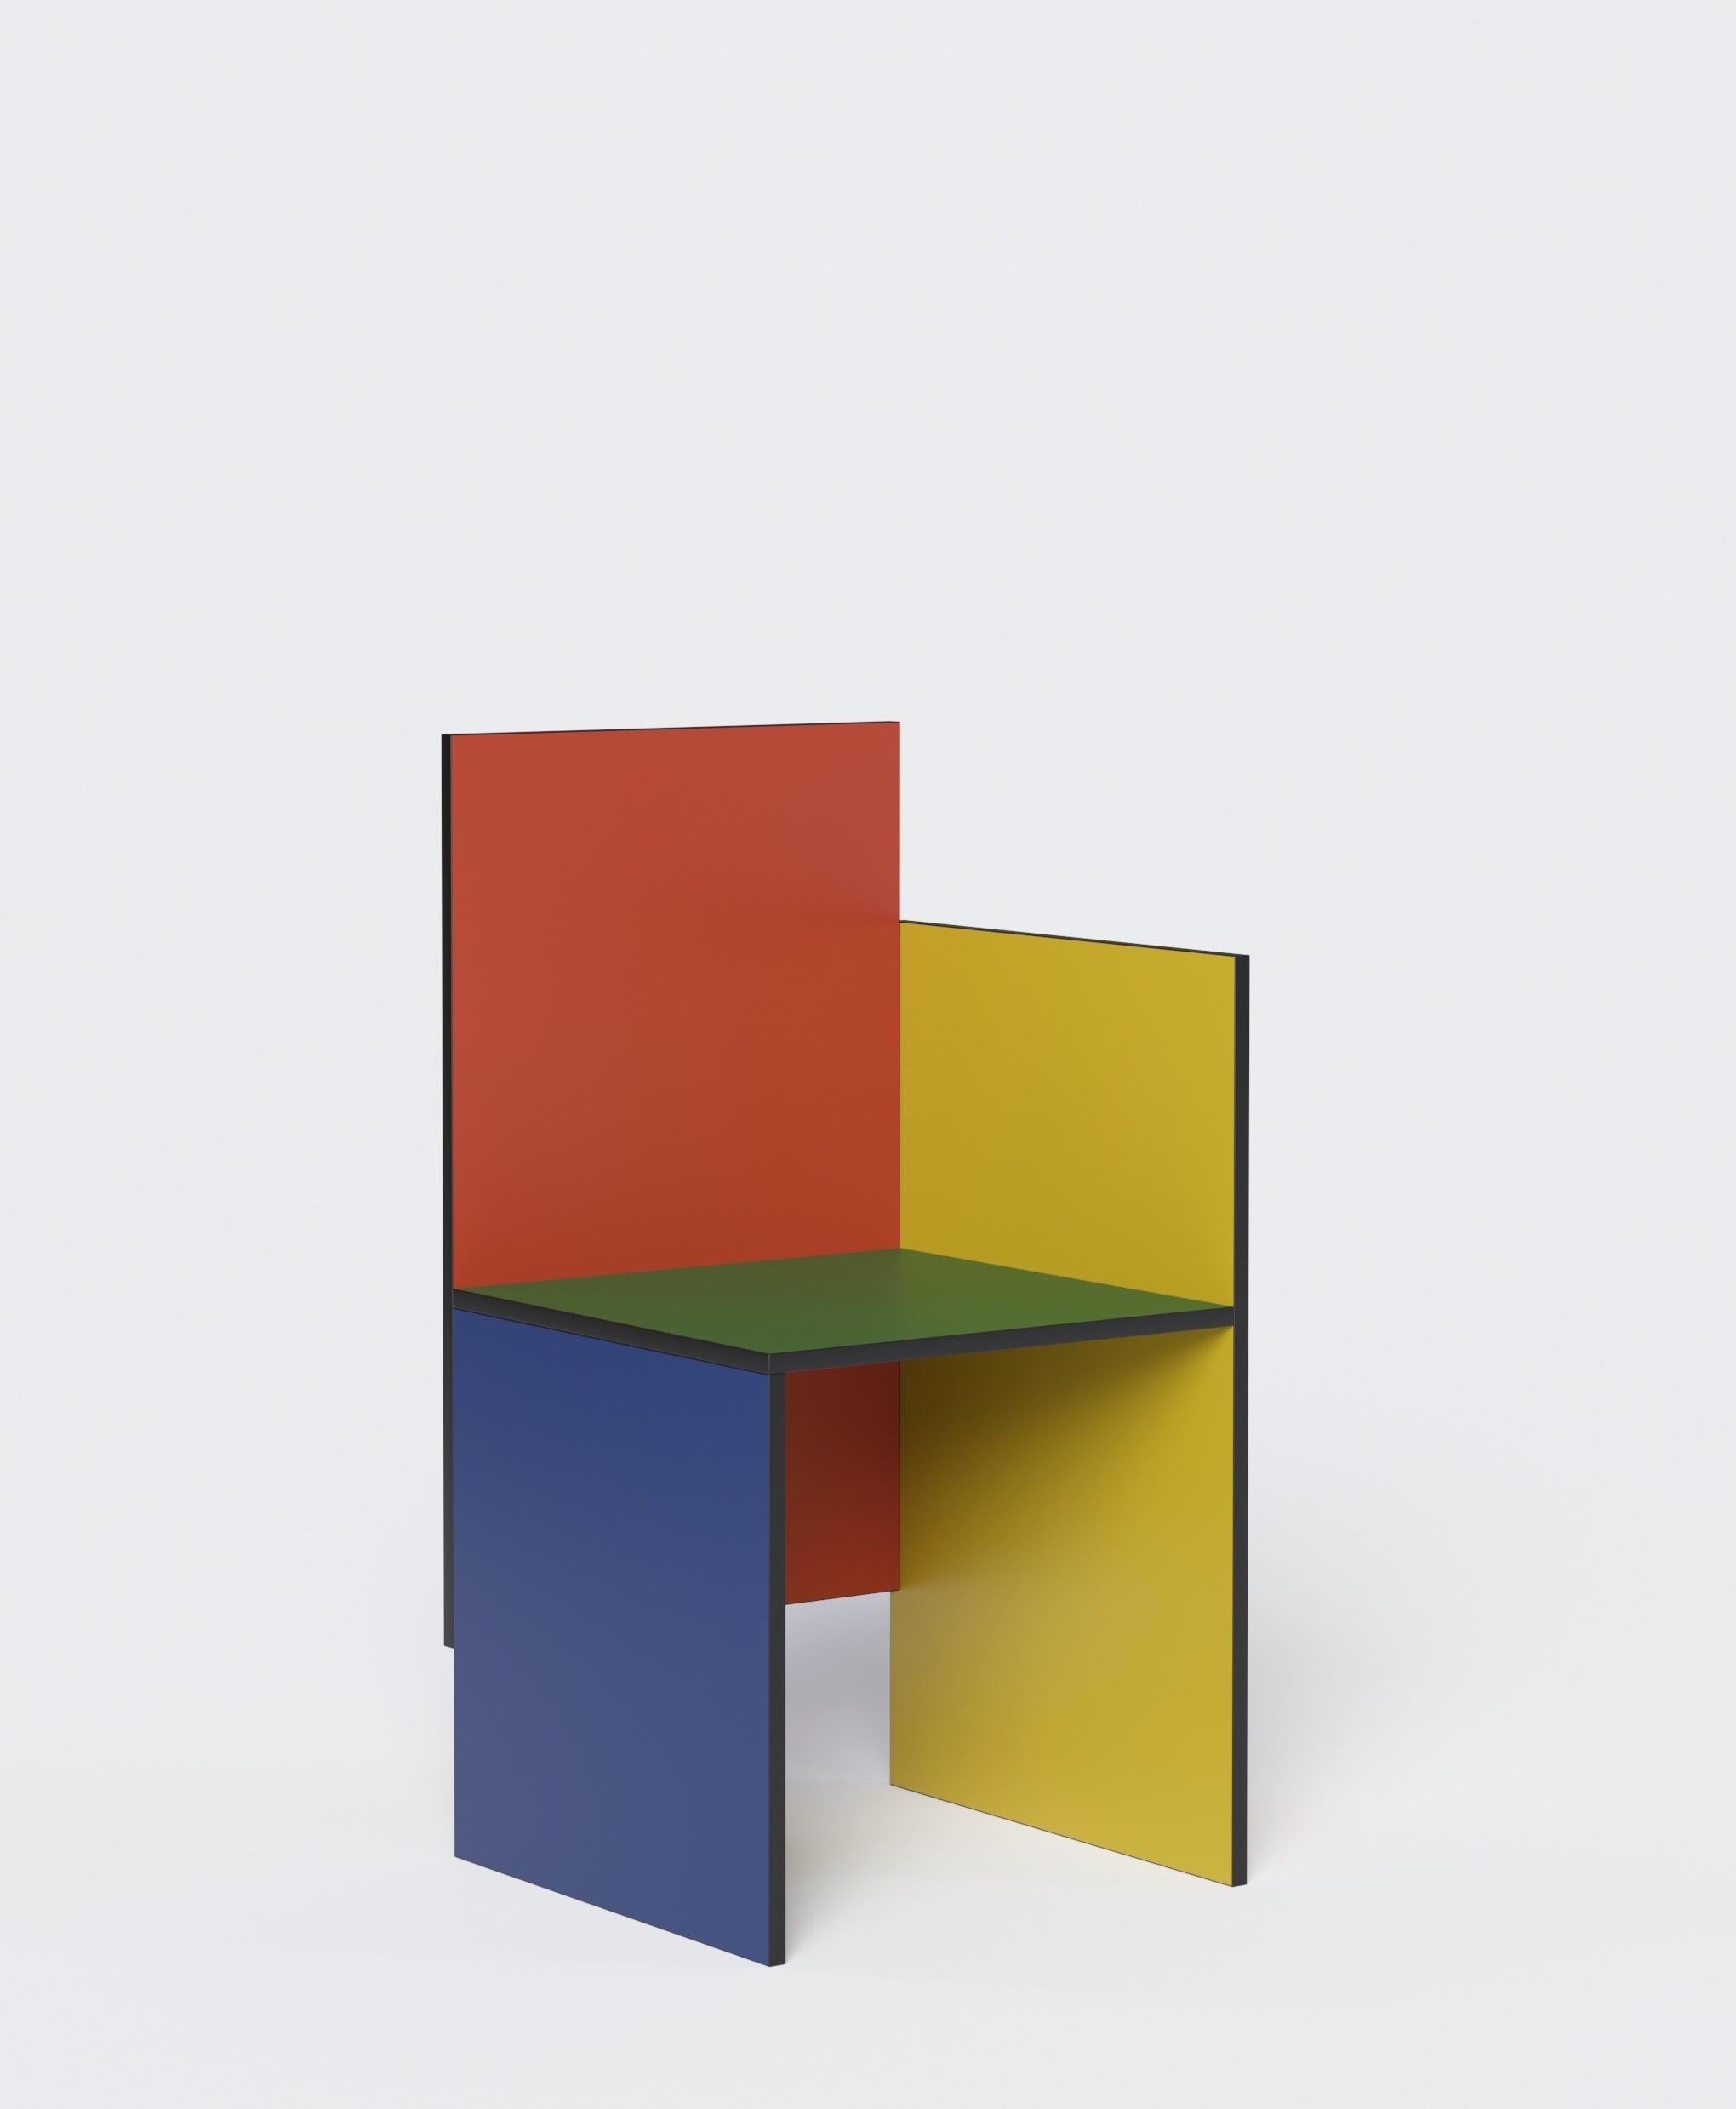 Chaise géométrique et minimaliste du designer russe Dmitry Samygin. Inspiré par Gerrit Rietveld et le style Bauhaus. 

Contreplaqué
Mesures : 88.5 x 45 x 45 cm

Choisissez votre couleur ! 

Deux versions :
- Un bras (droit ou gauche)
- Deux